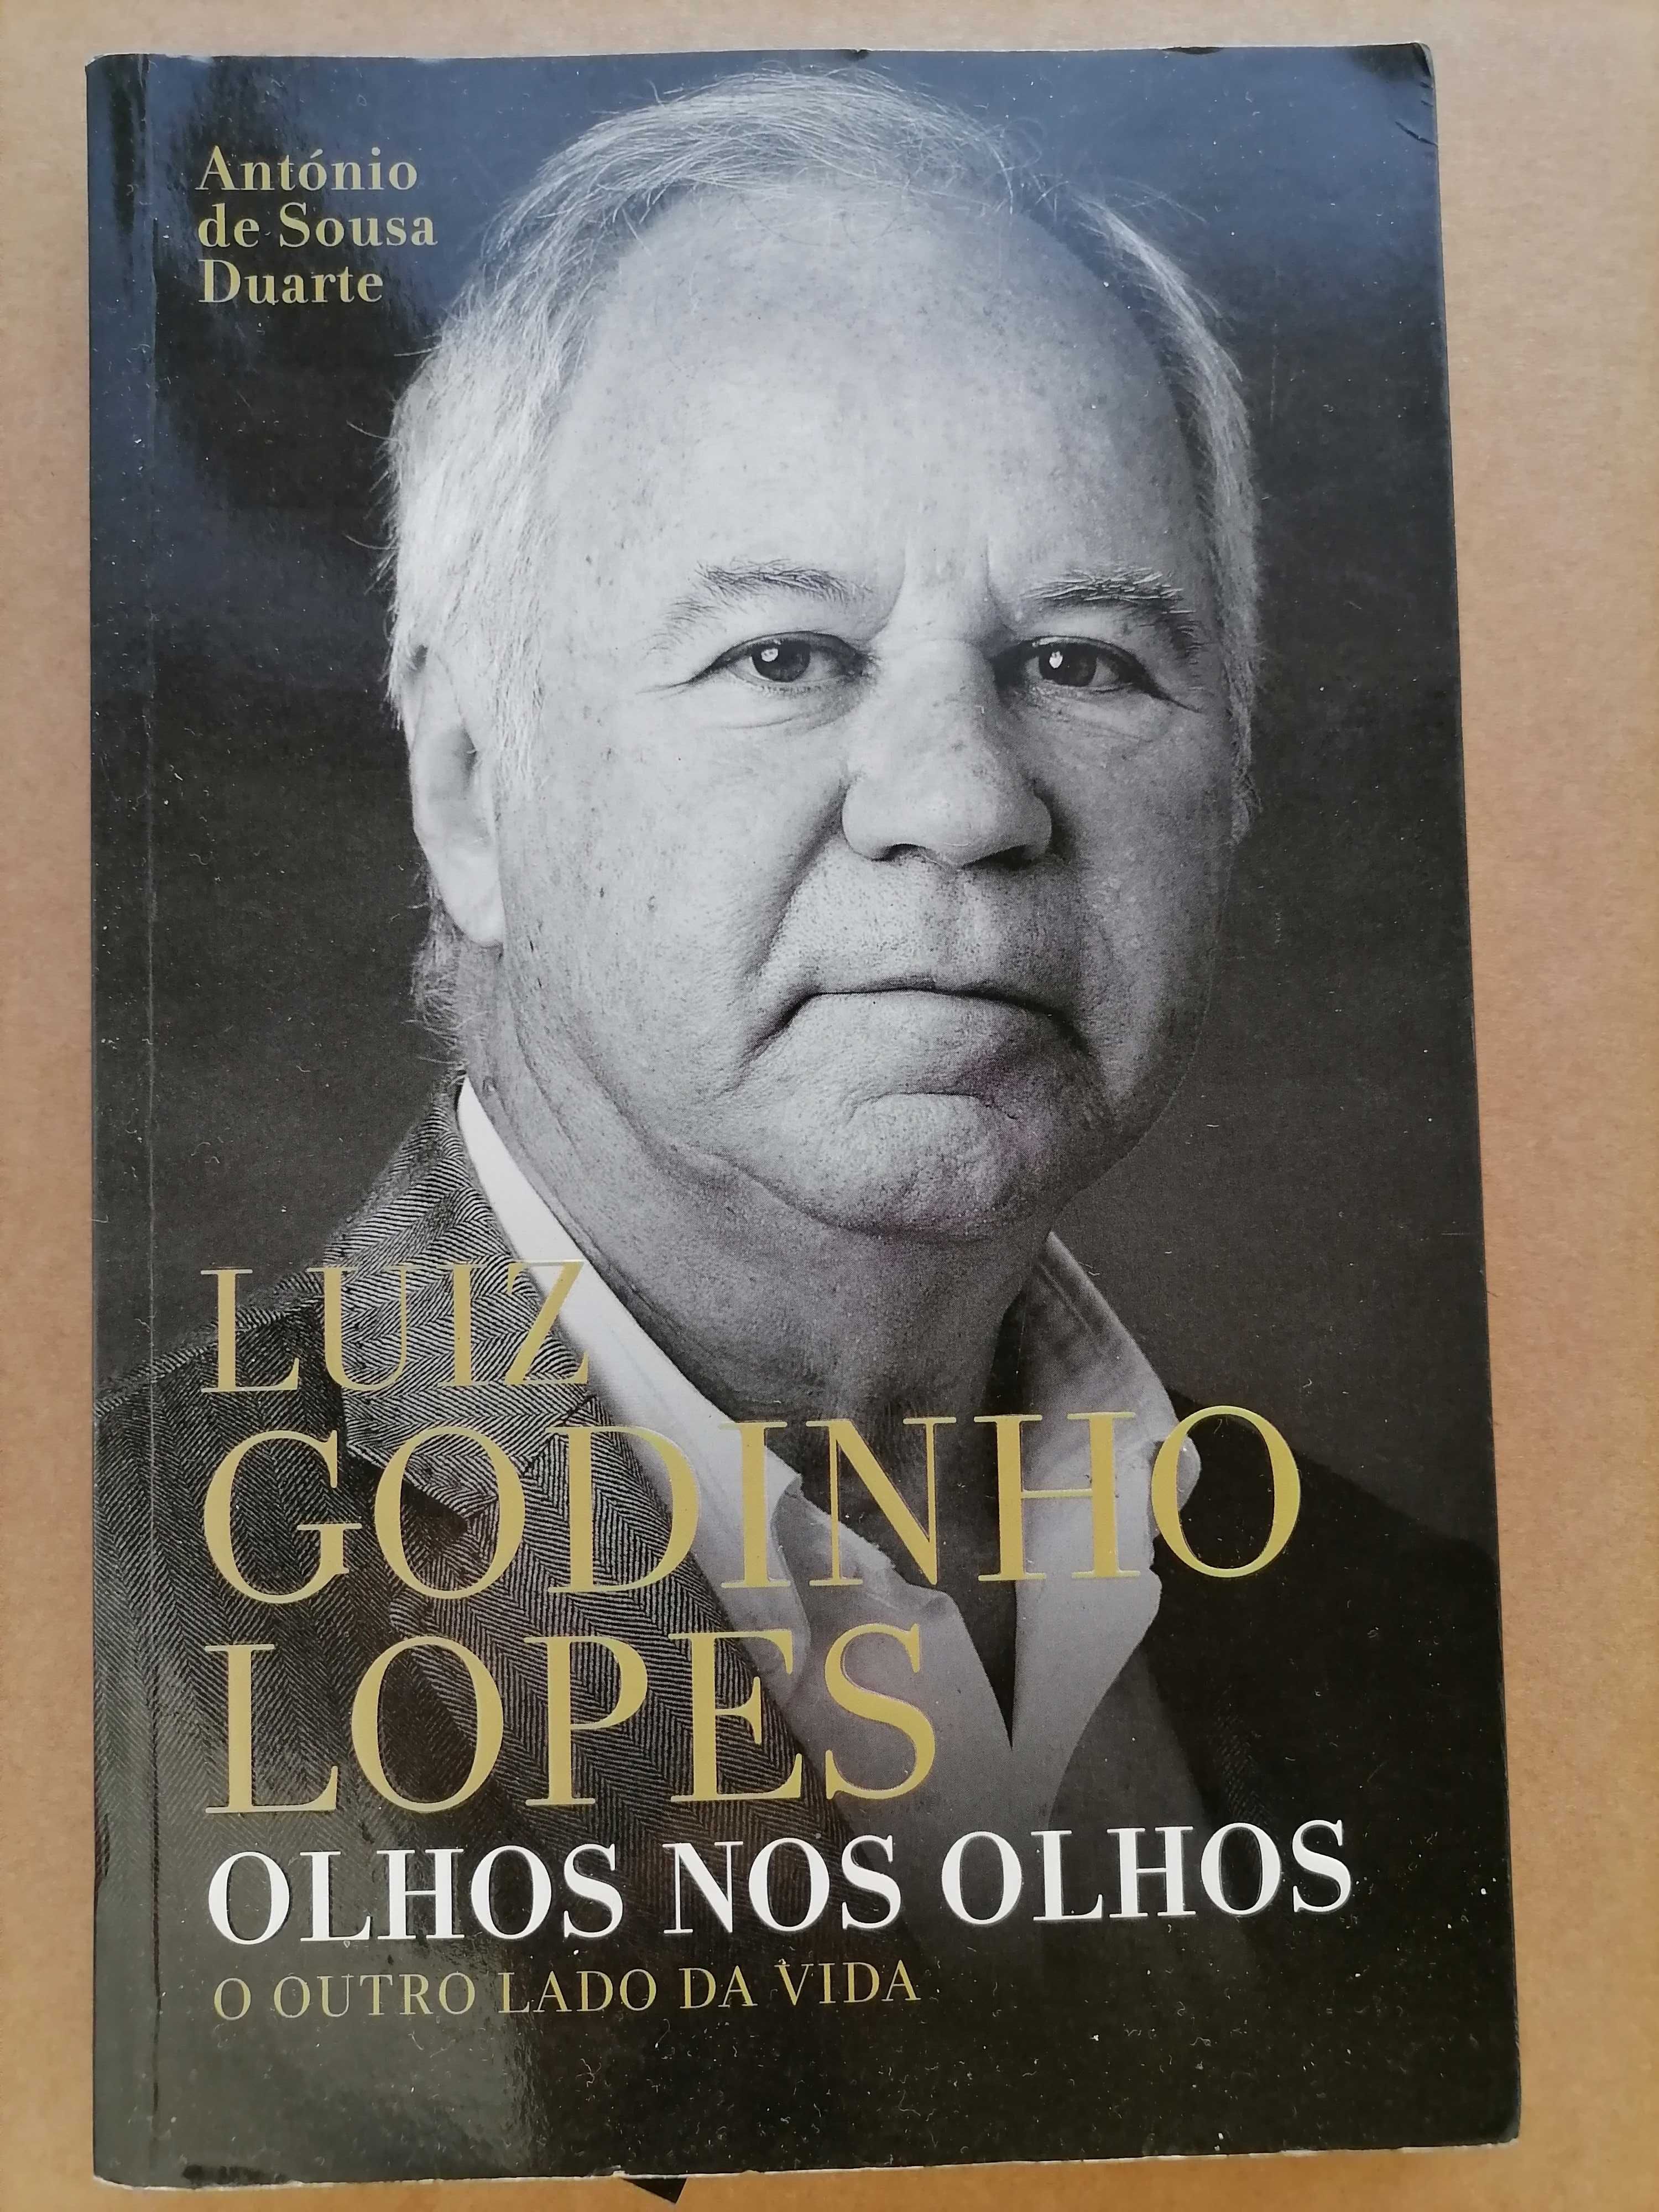 Sporting Livro LUIZ GODINHO LOPES Olhos nos Olhos  1ª Edição 2018